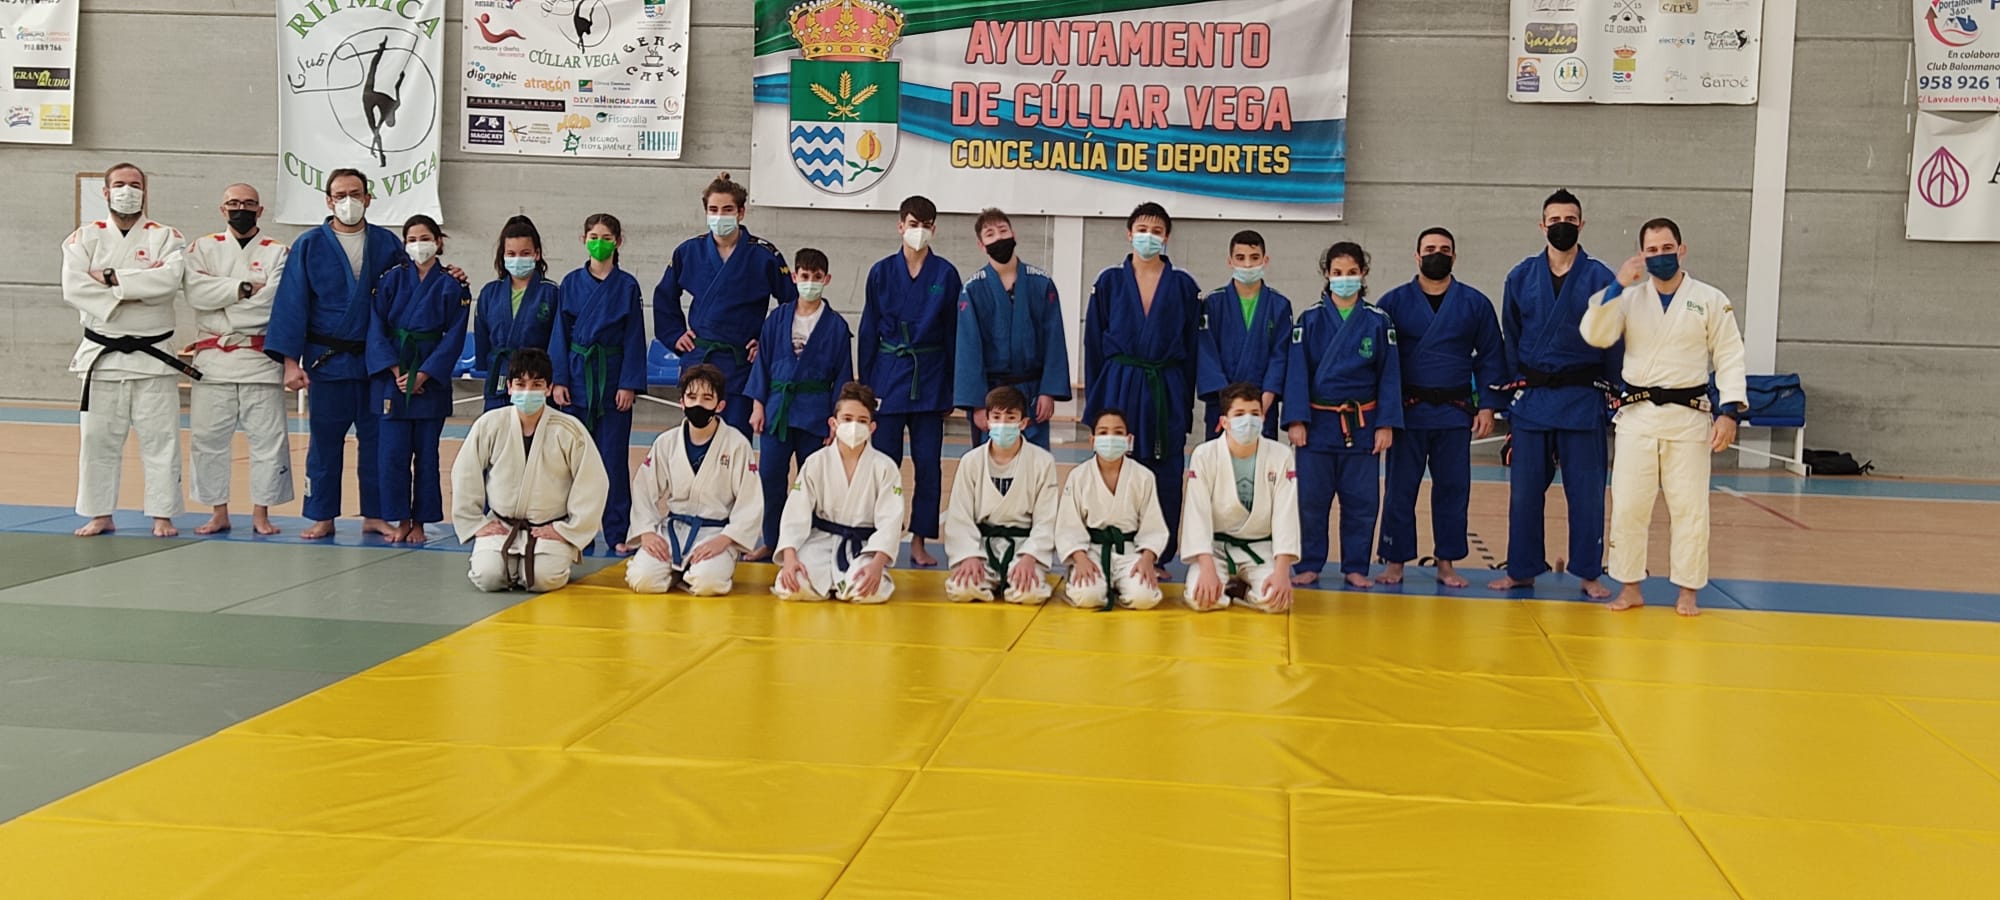 Una treintena de judocas de siete clubes de la provincia participa en un entrenamiento en Cúllar Vega